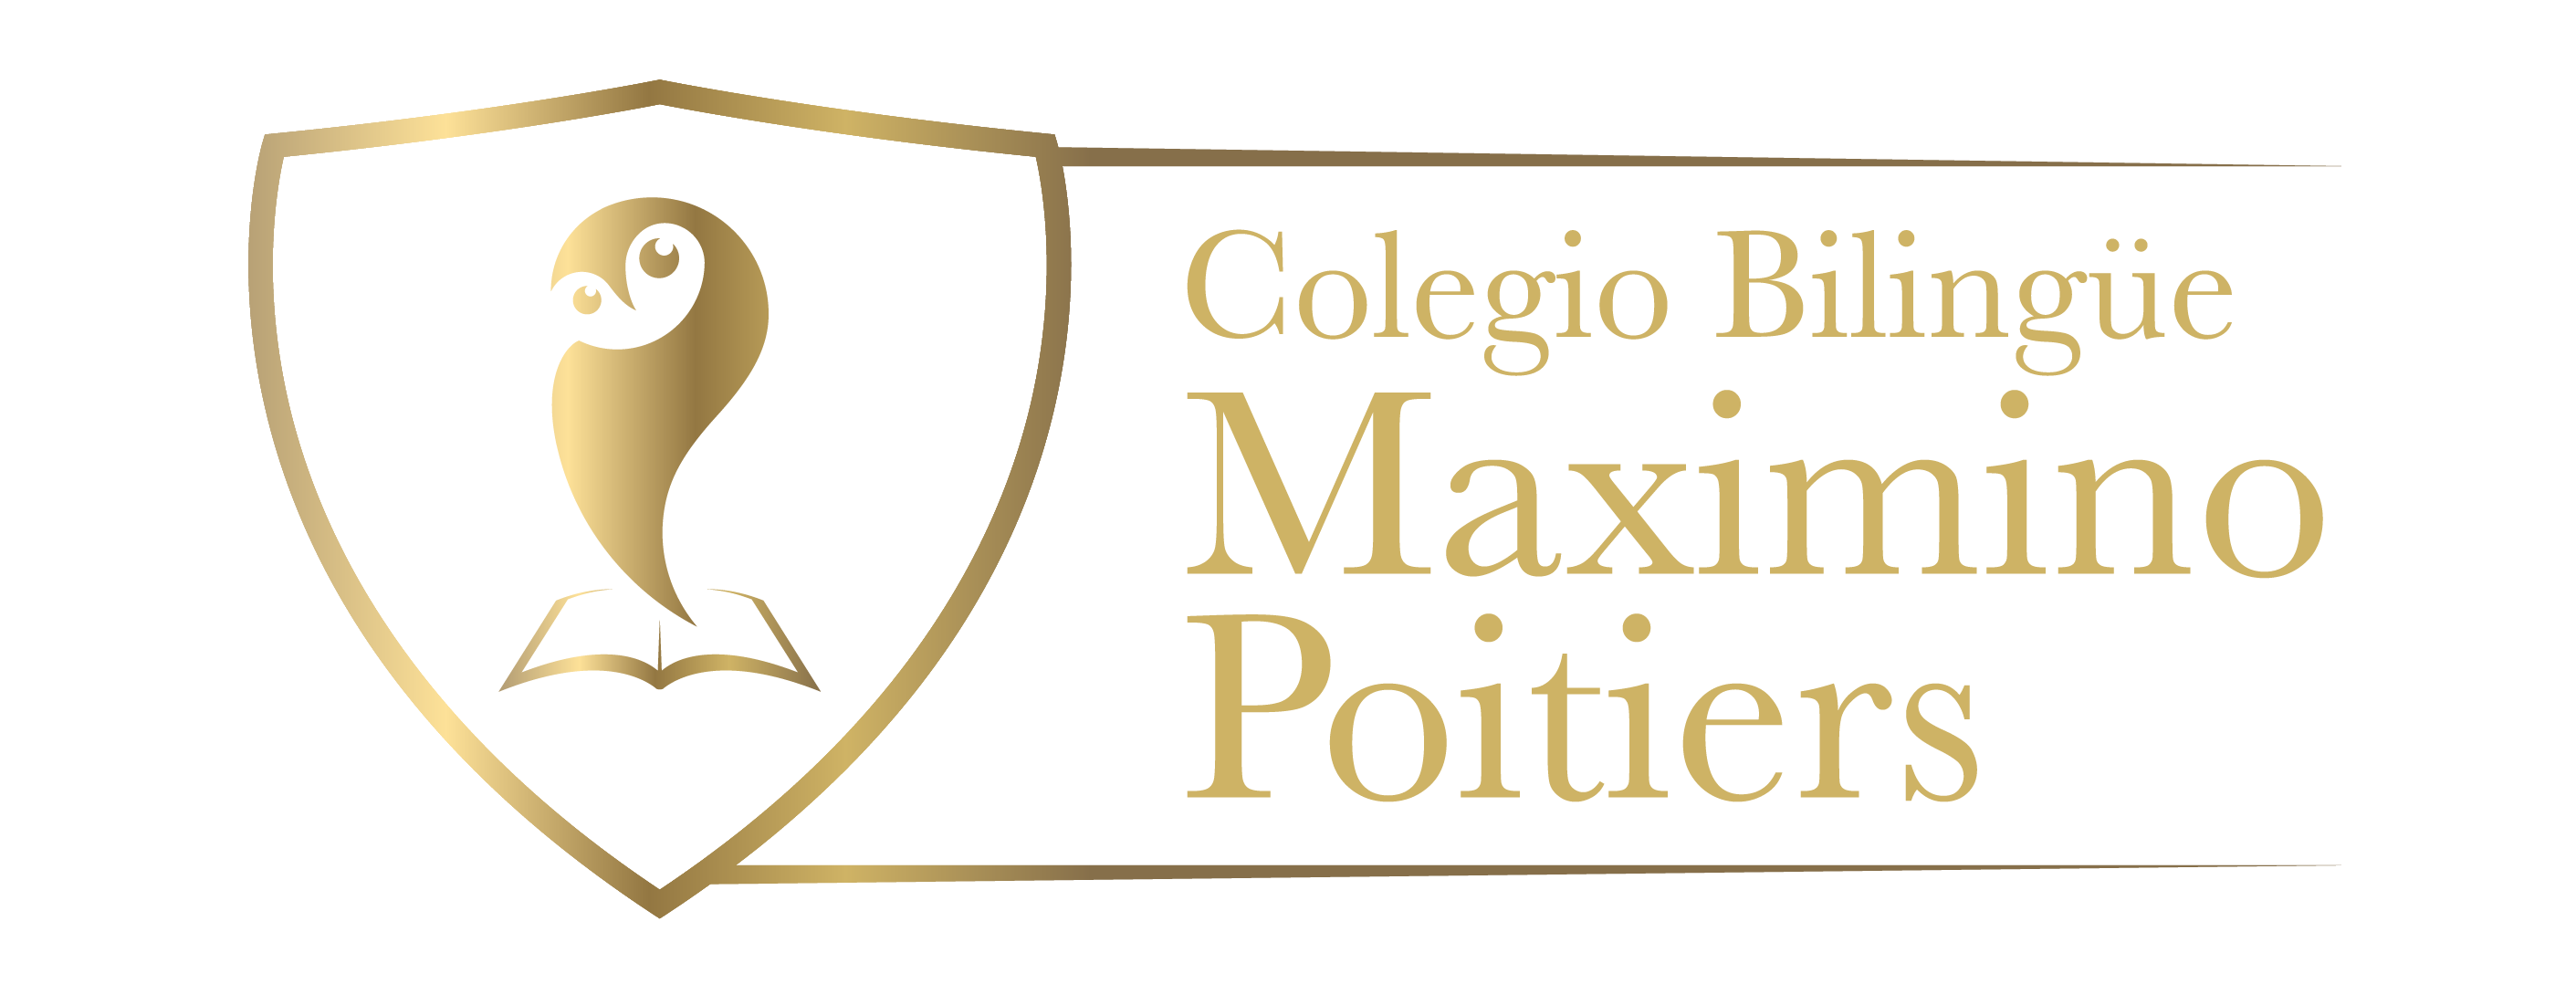 COLEGIO BILINGUE MAXIMINO POITIERS|Colegios BOGOTA|COLEGIOS COLOMBIA